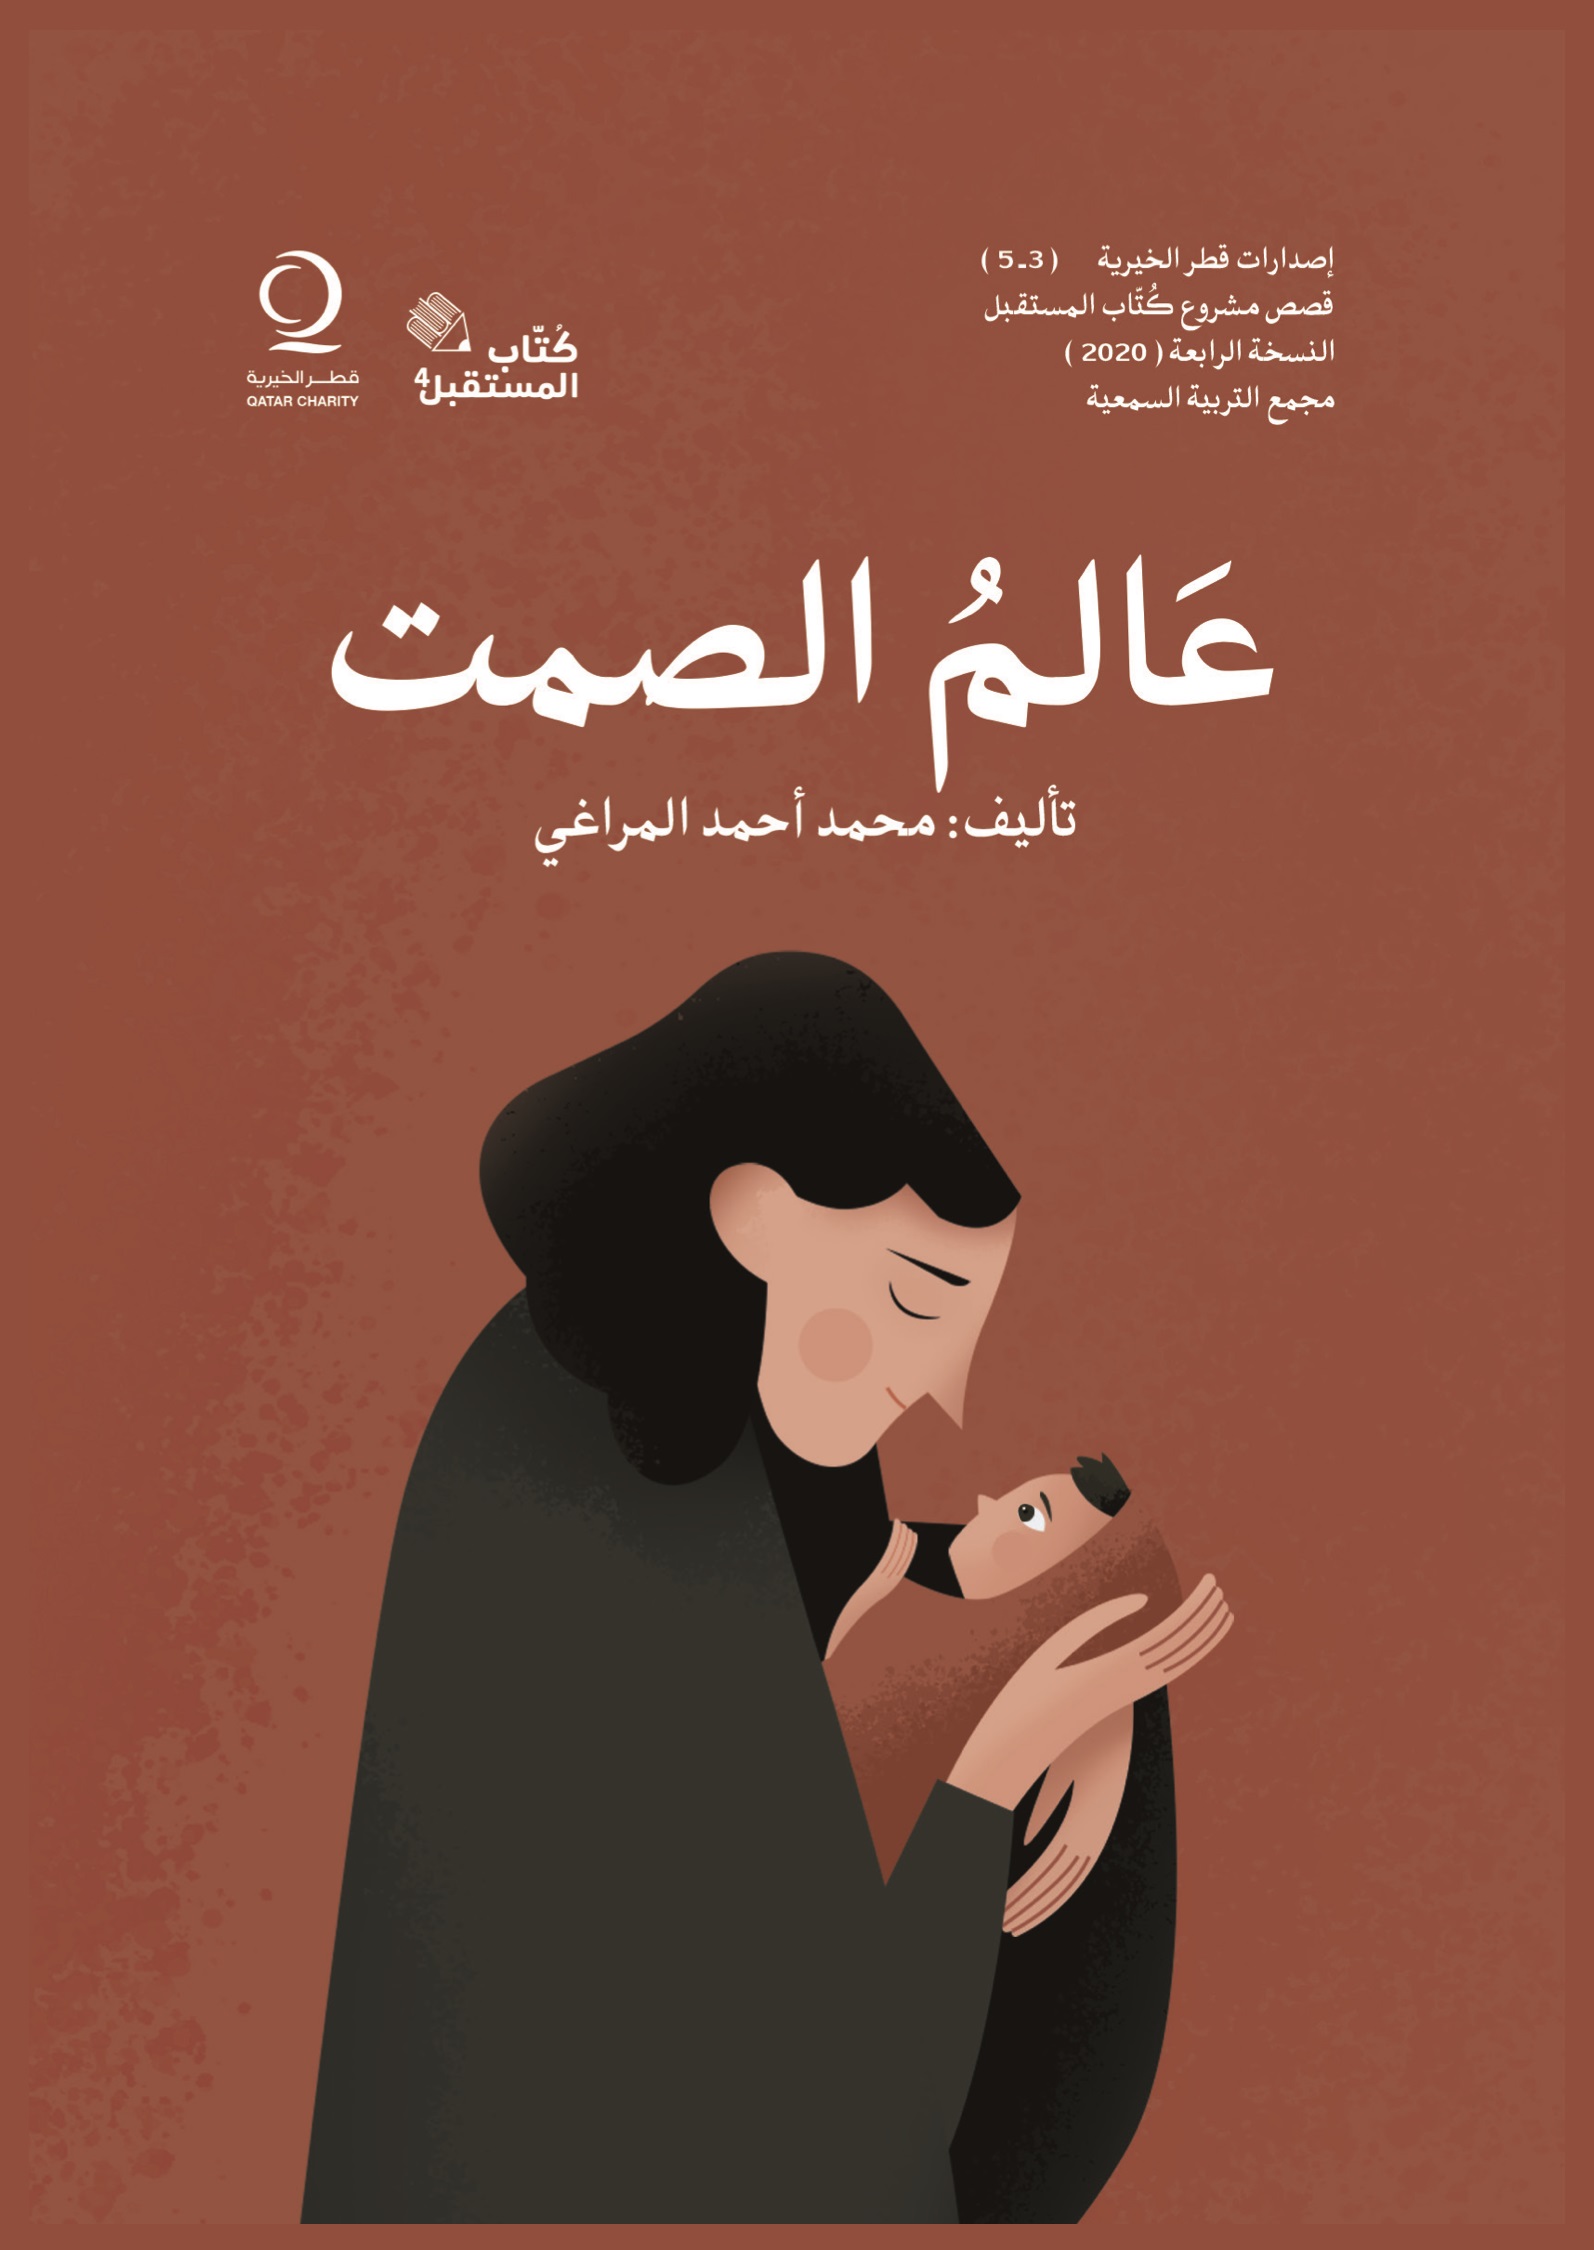 عالم الصمت (قصة قصيرة) - المؤلف: محمد أحمد المراغي - كتاب المستقبل